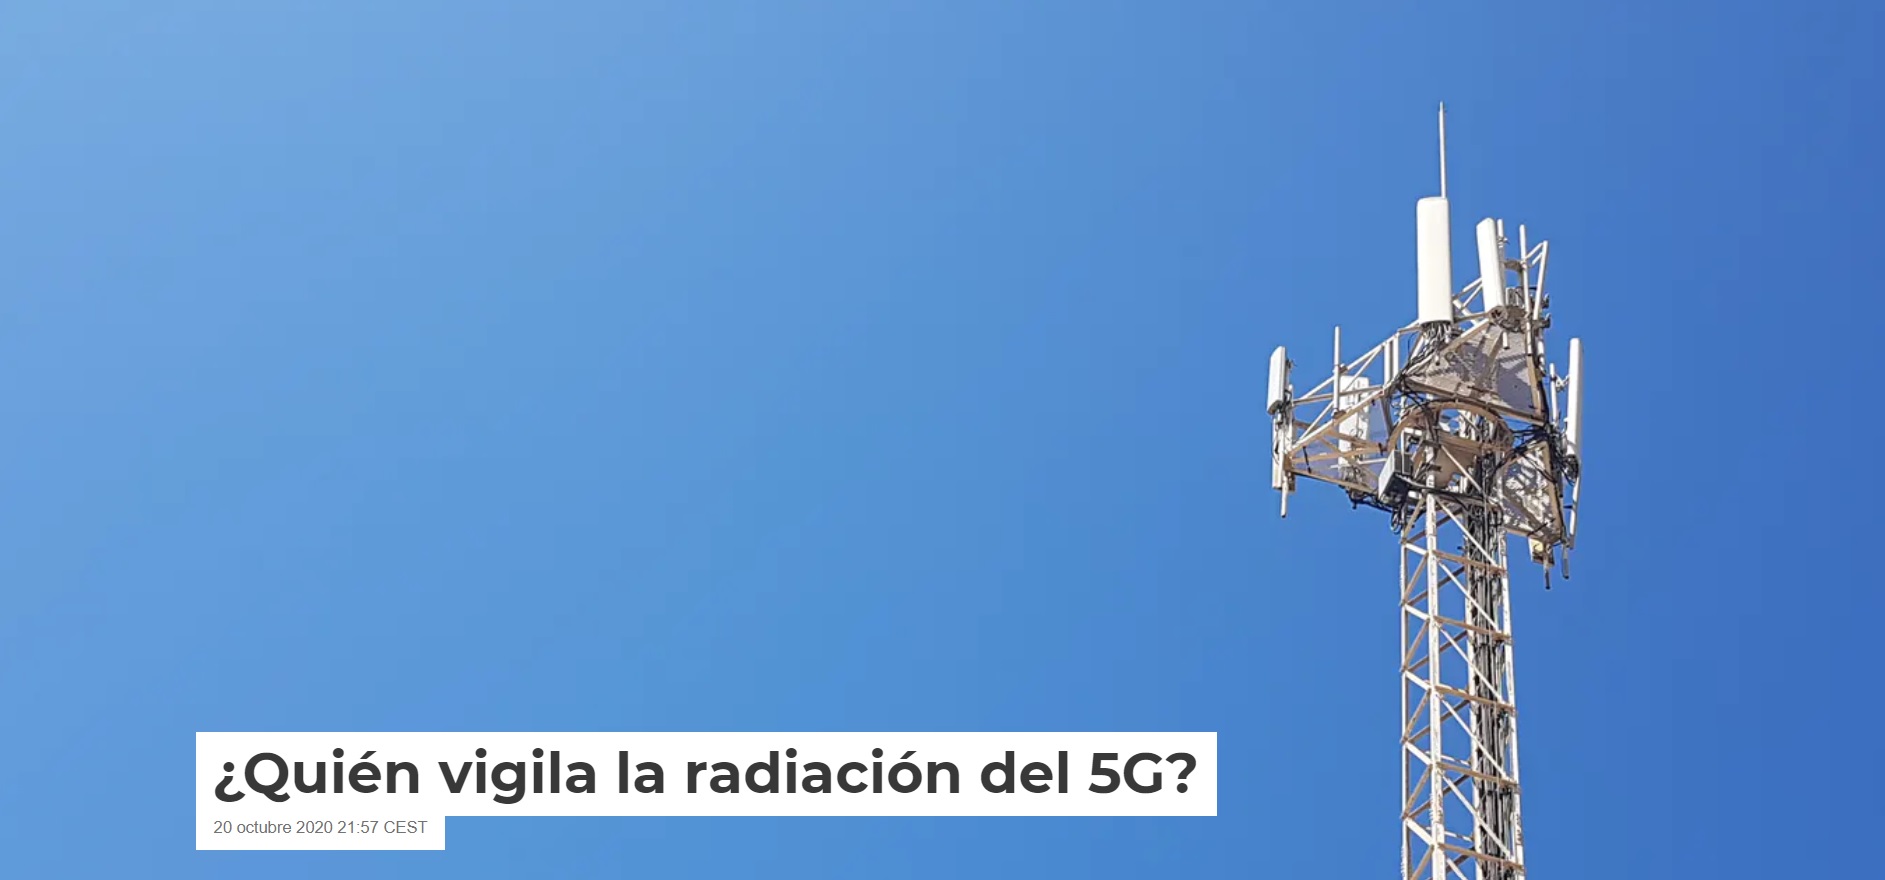 ¿Quién vigila la radiación del 5G?, por 